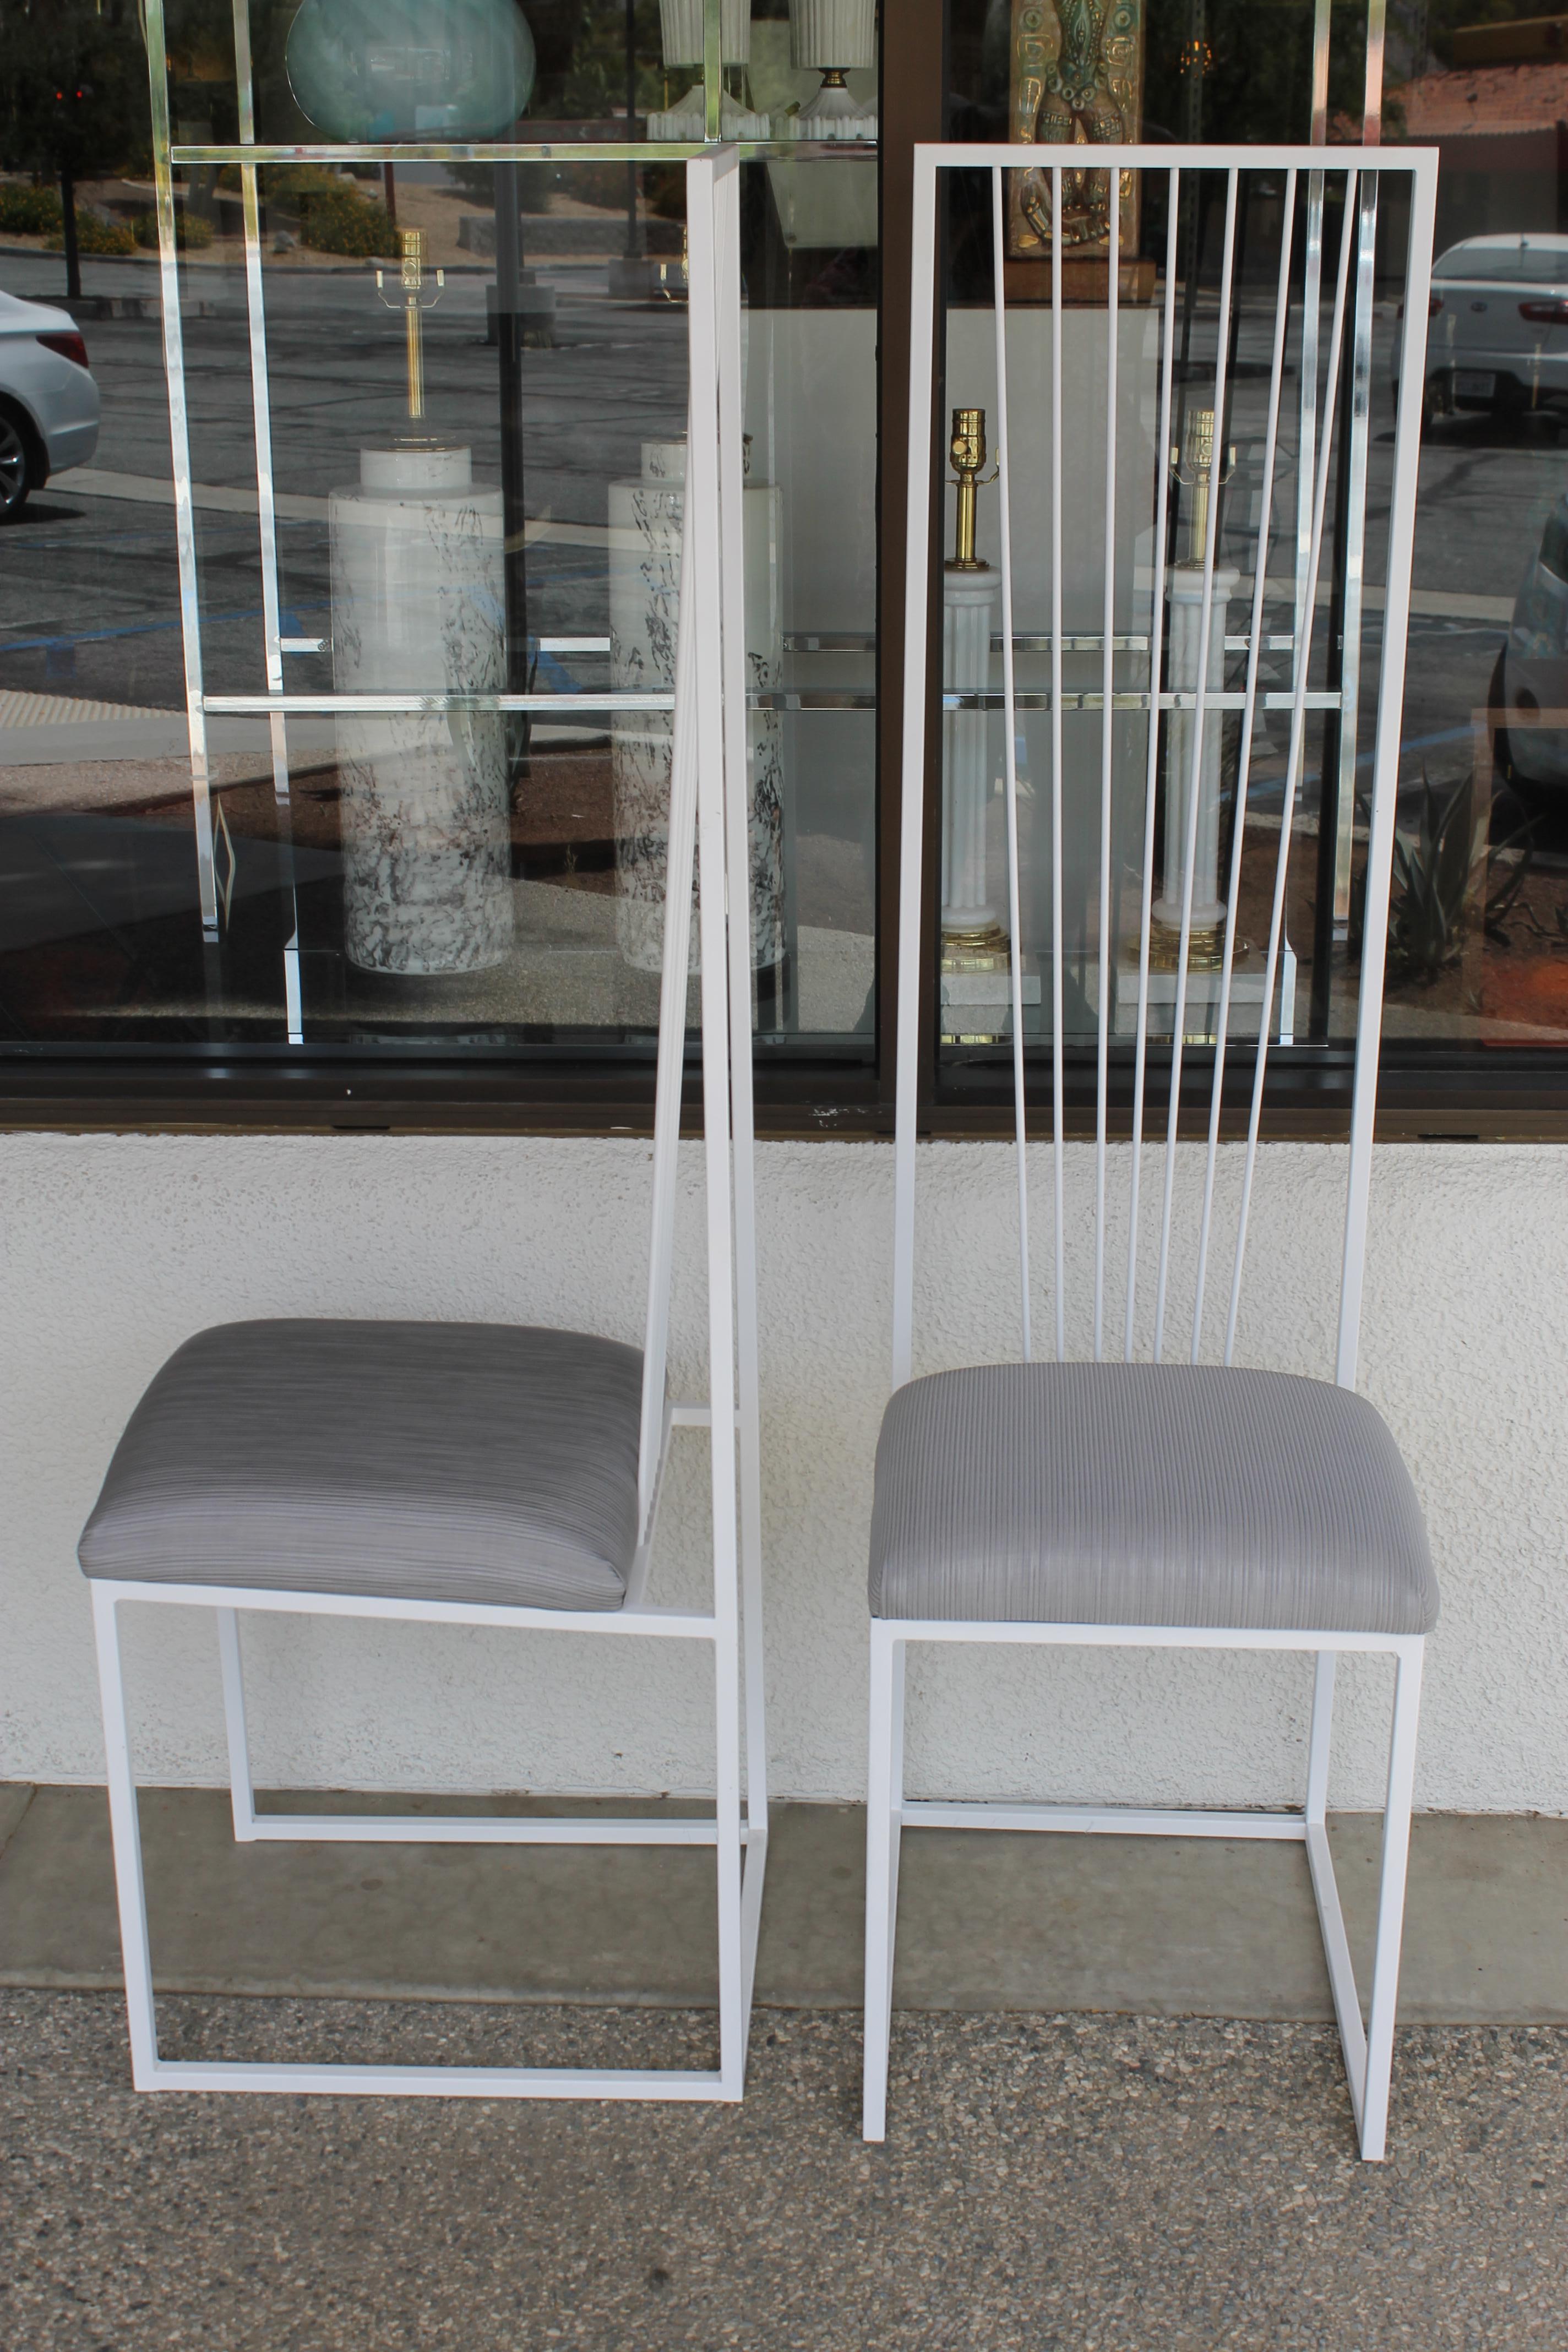 Vier Stühle mit hoher Rückenlehne, bezogen mit Sunbrella-Stoff. Wir haben diese Stühle sandgestrahlt und pulverbeschichtet in satiniertem Weiß. Kann sowohl innen als auch außen verwendet werden. Jeder Stuhl ist 15